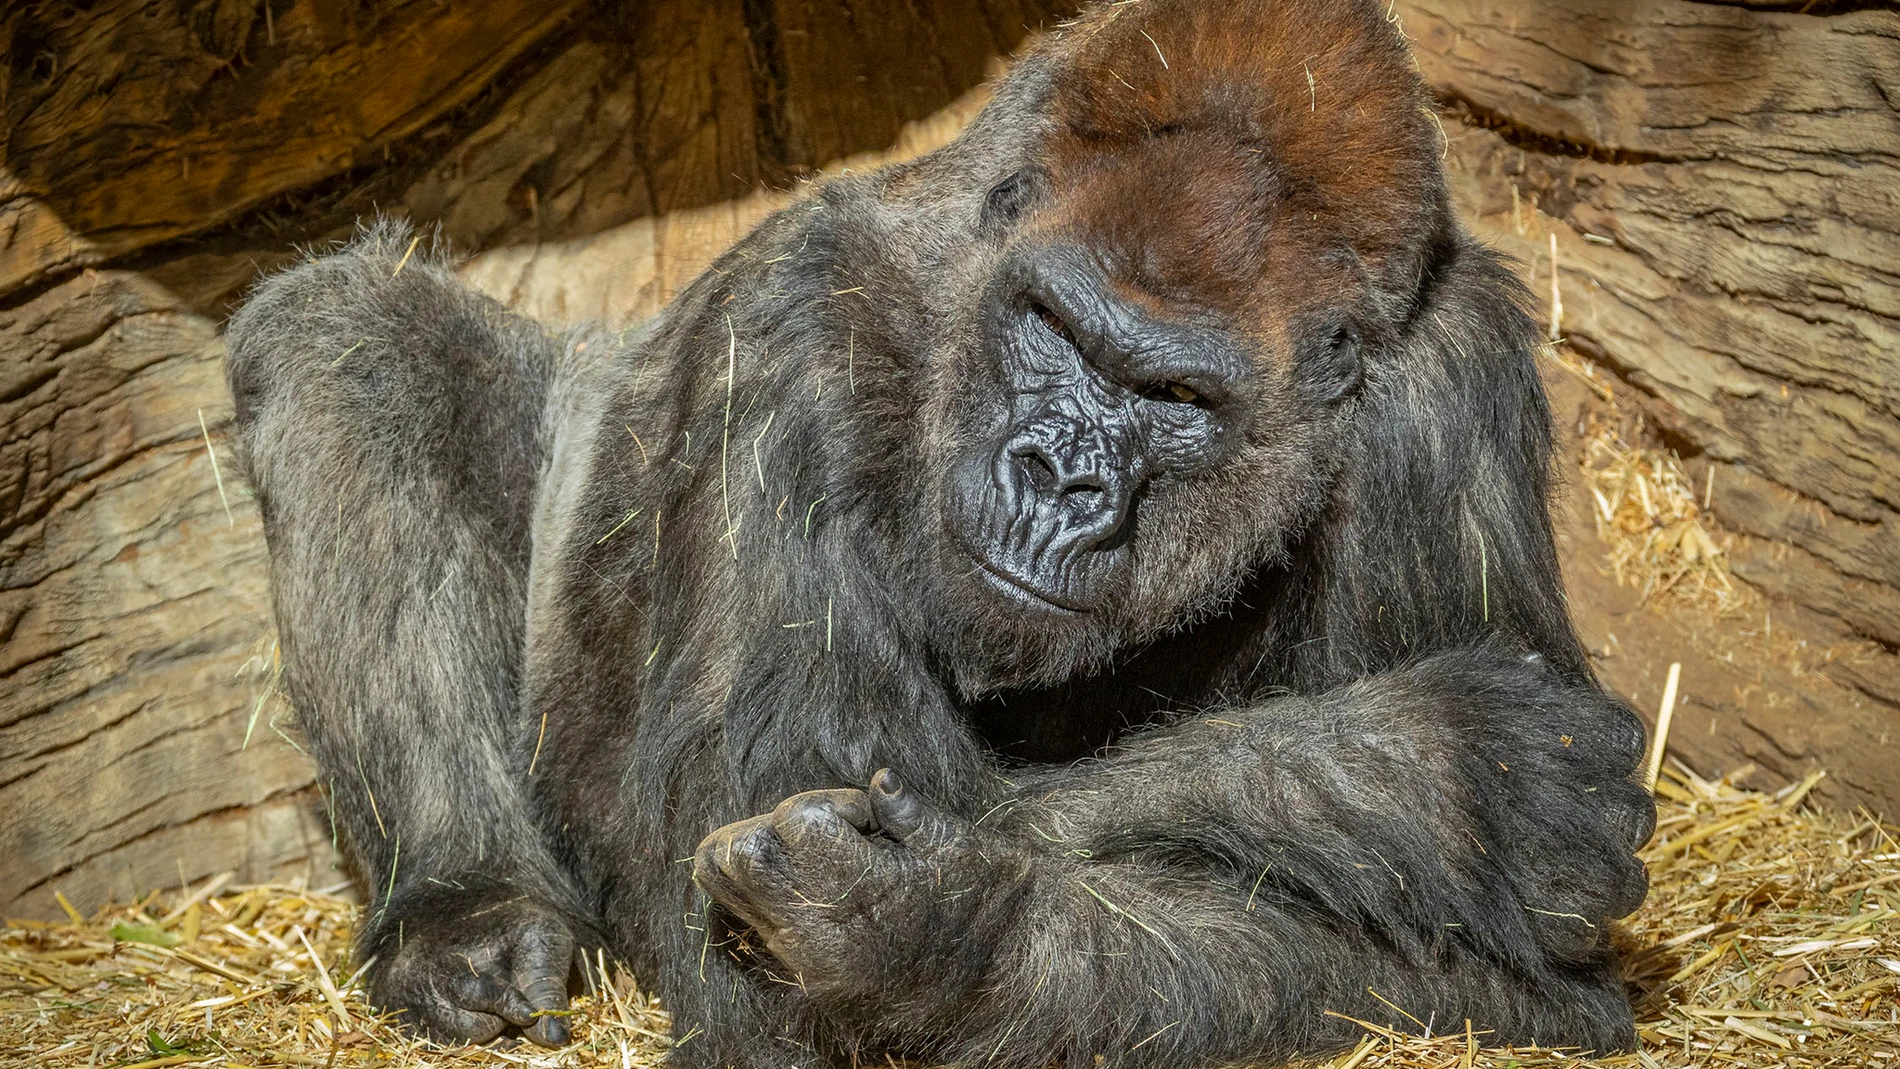 Imagen de uno de los gorilas de San diego infectado con Coronavirus